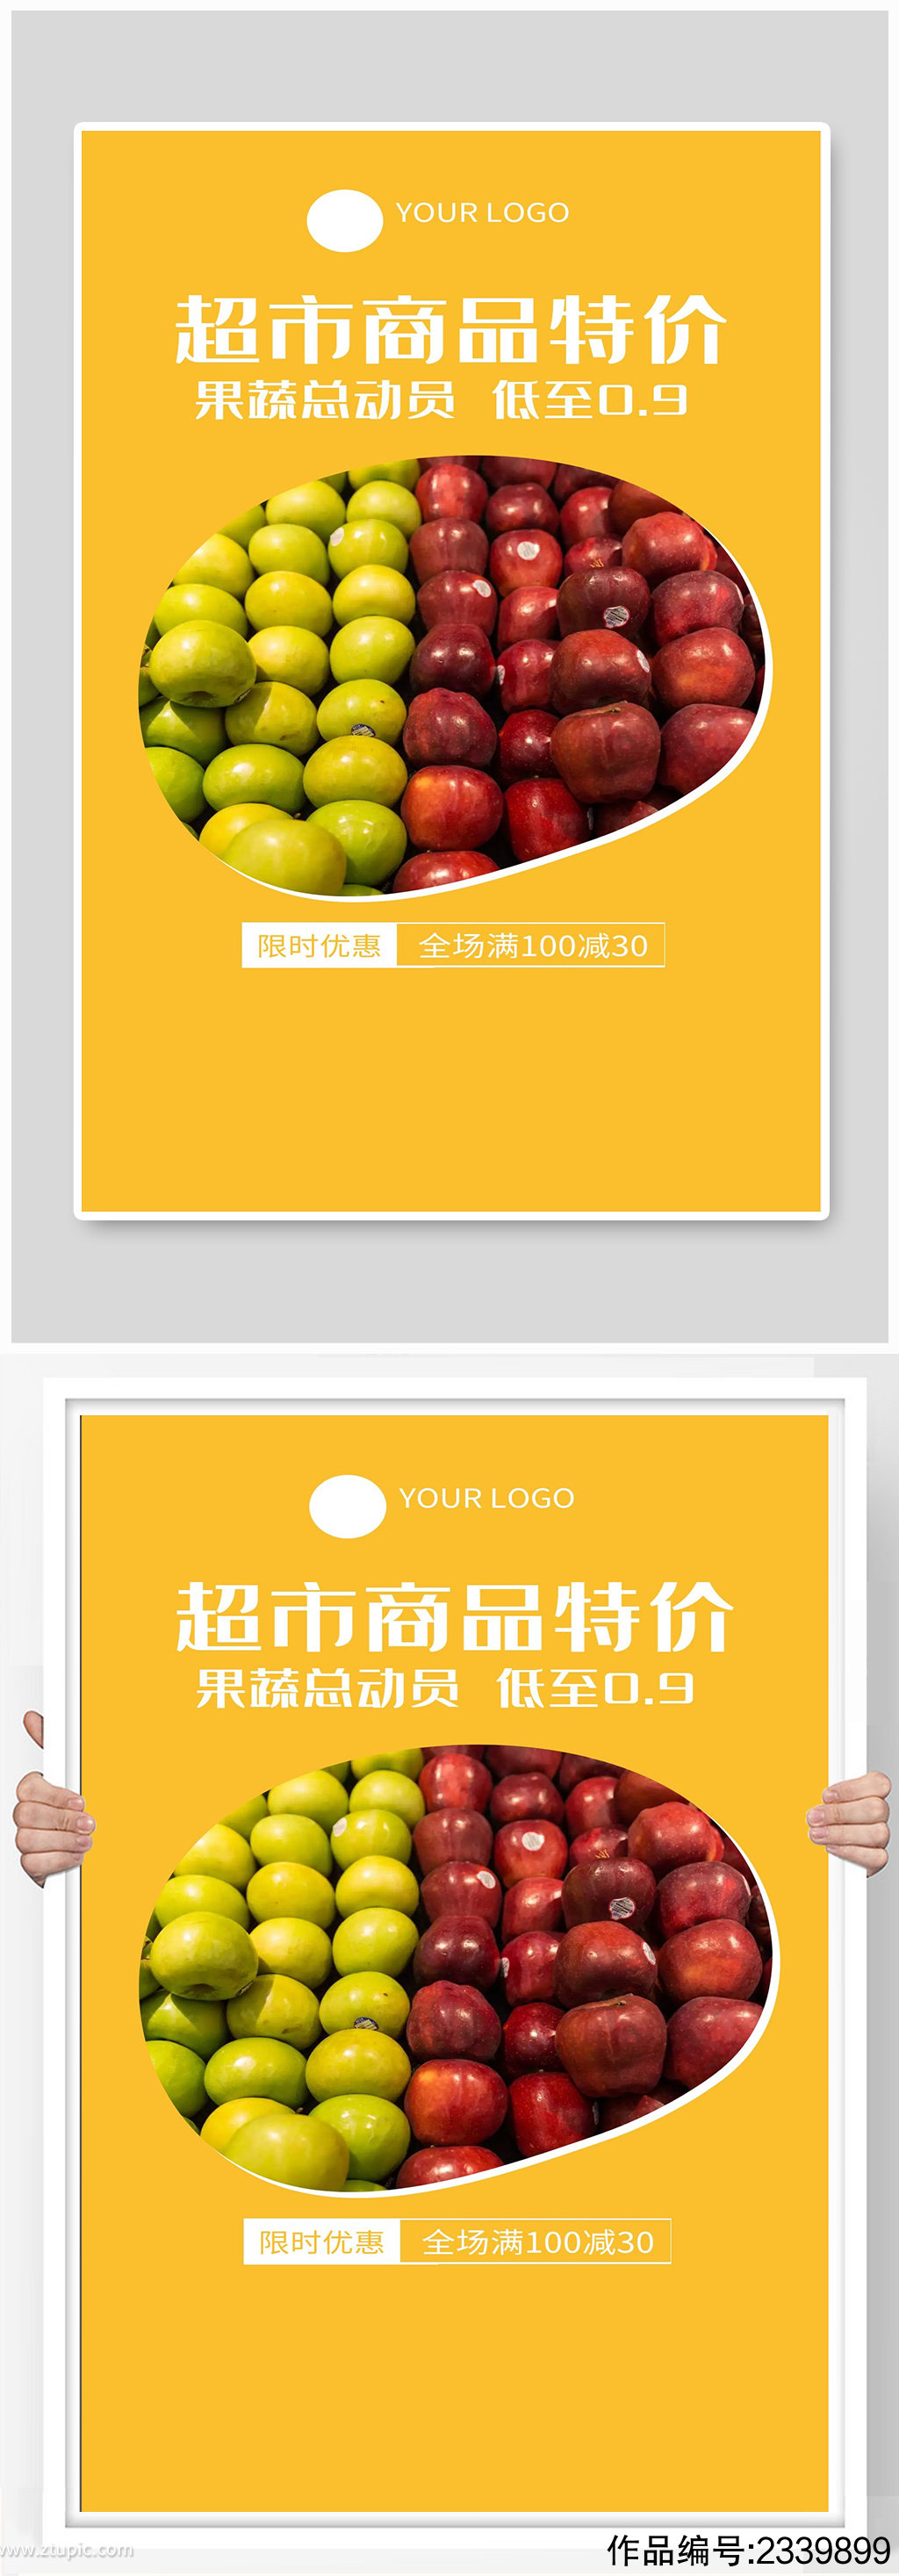 超市商品特价海报设计模板-编号2339899-众图网